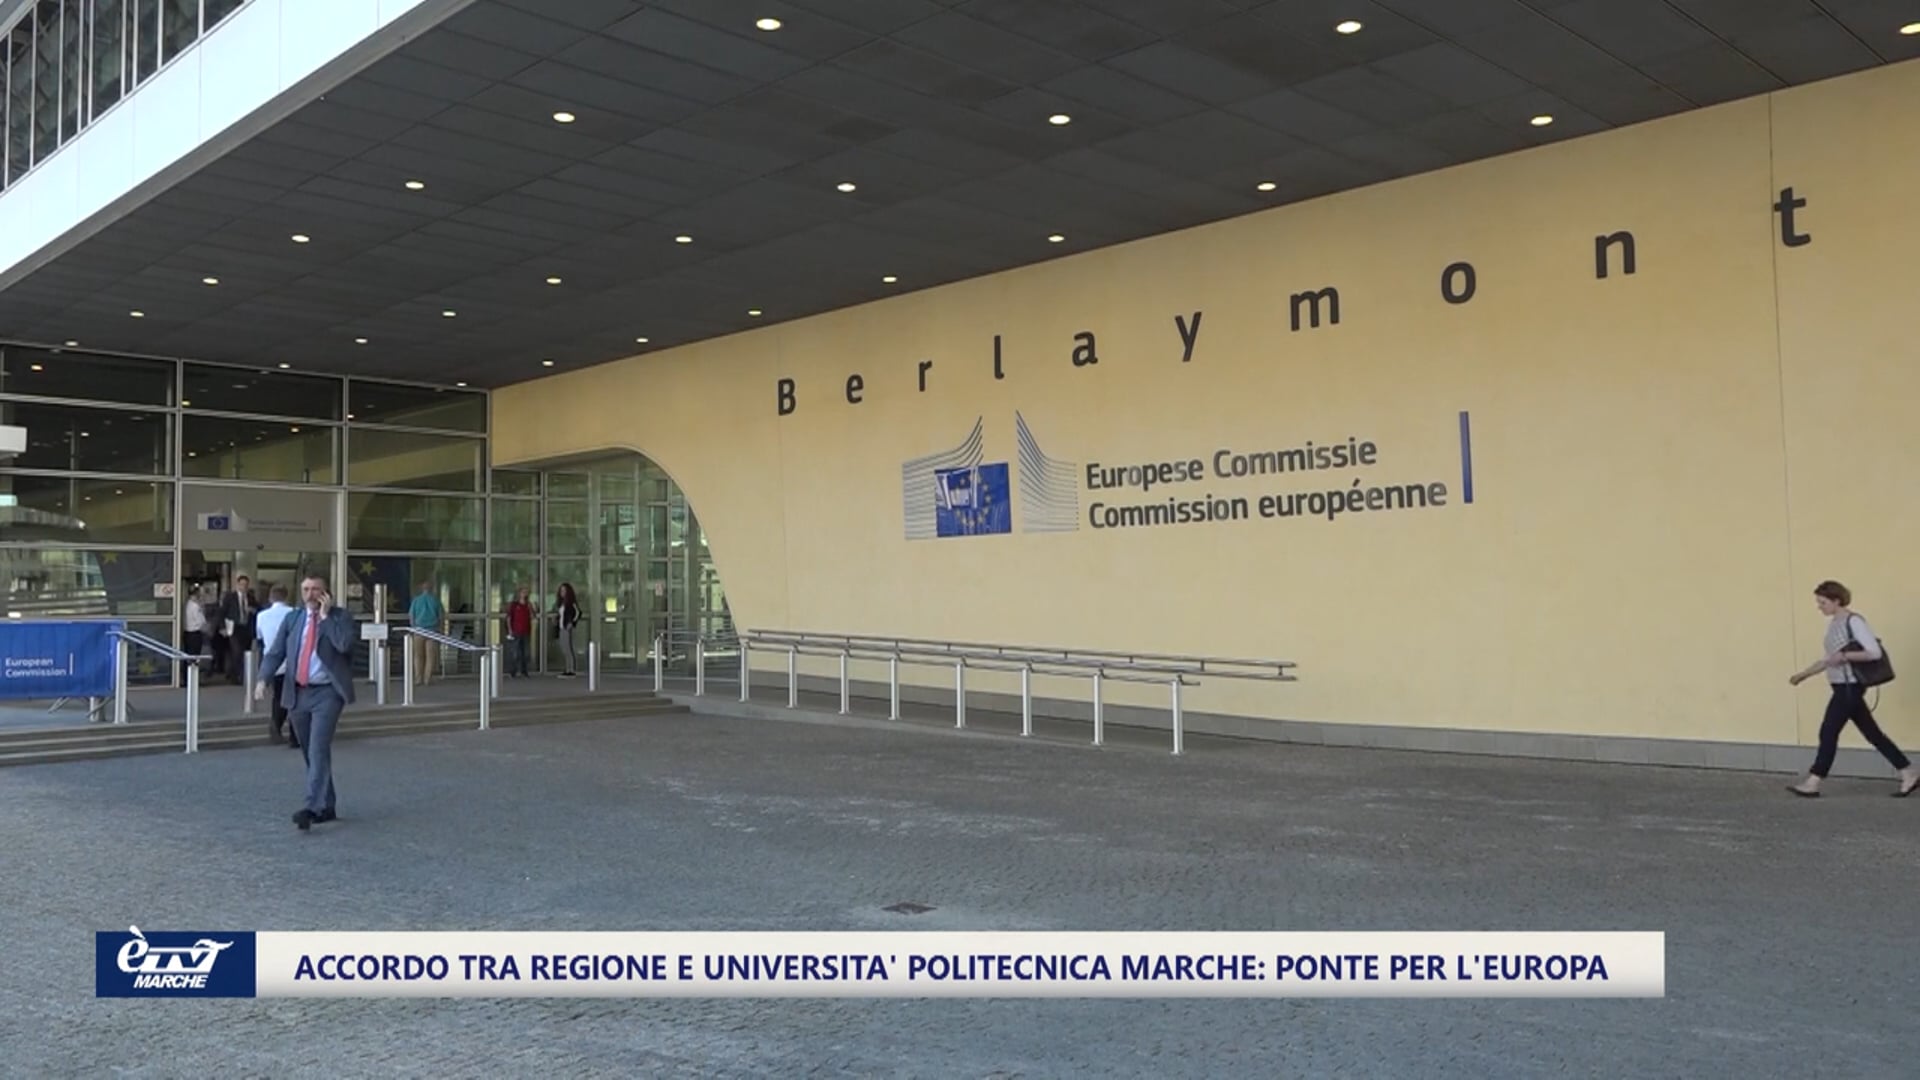 Accordo tra Regione e Università Politecnica delle Marche: l'Europa è più vicina - VIDEO 